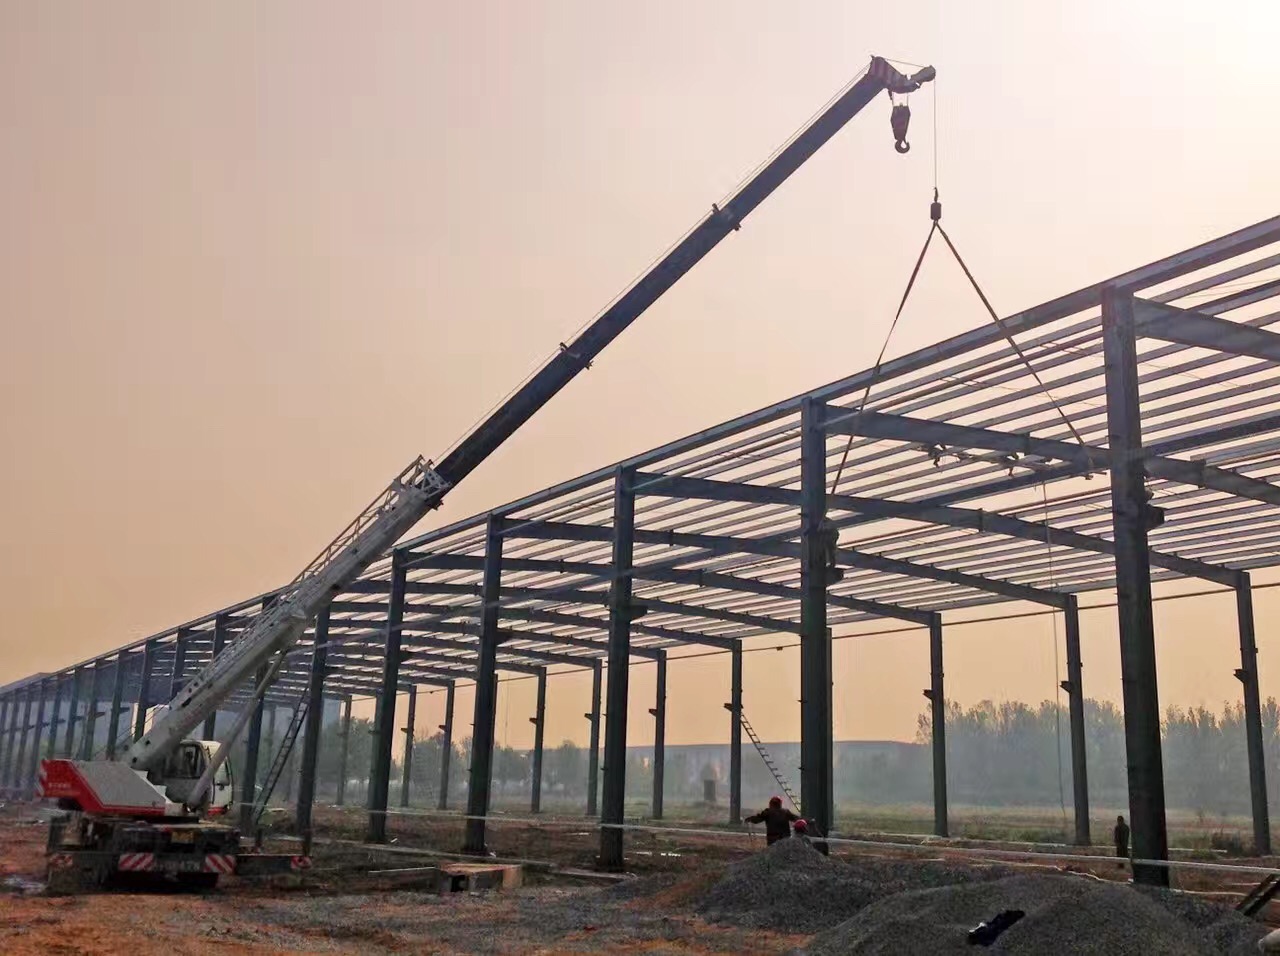 钢结构工程专业承包 钢结构工程 钢结构厂房工程 生产加工